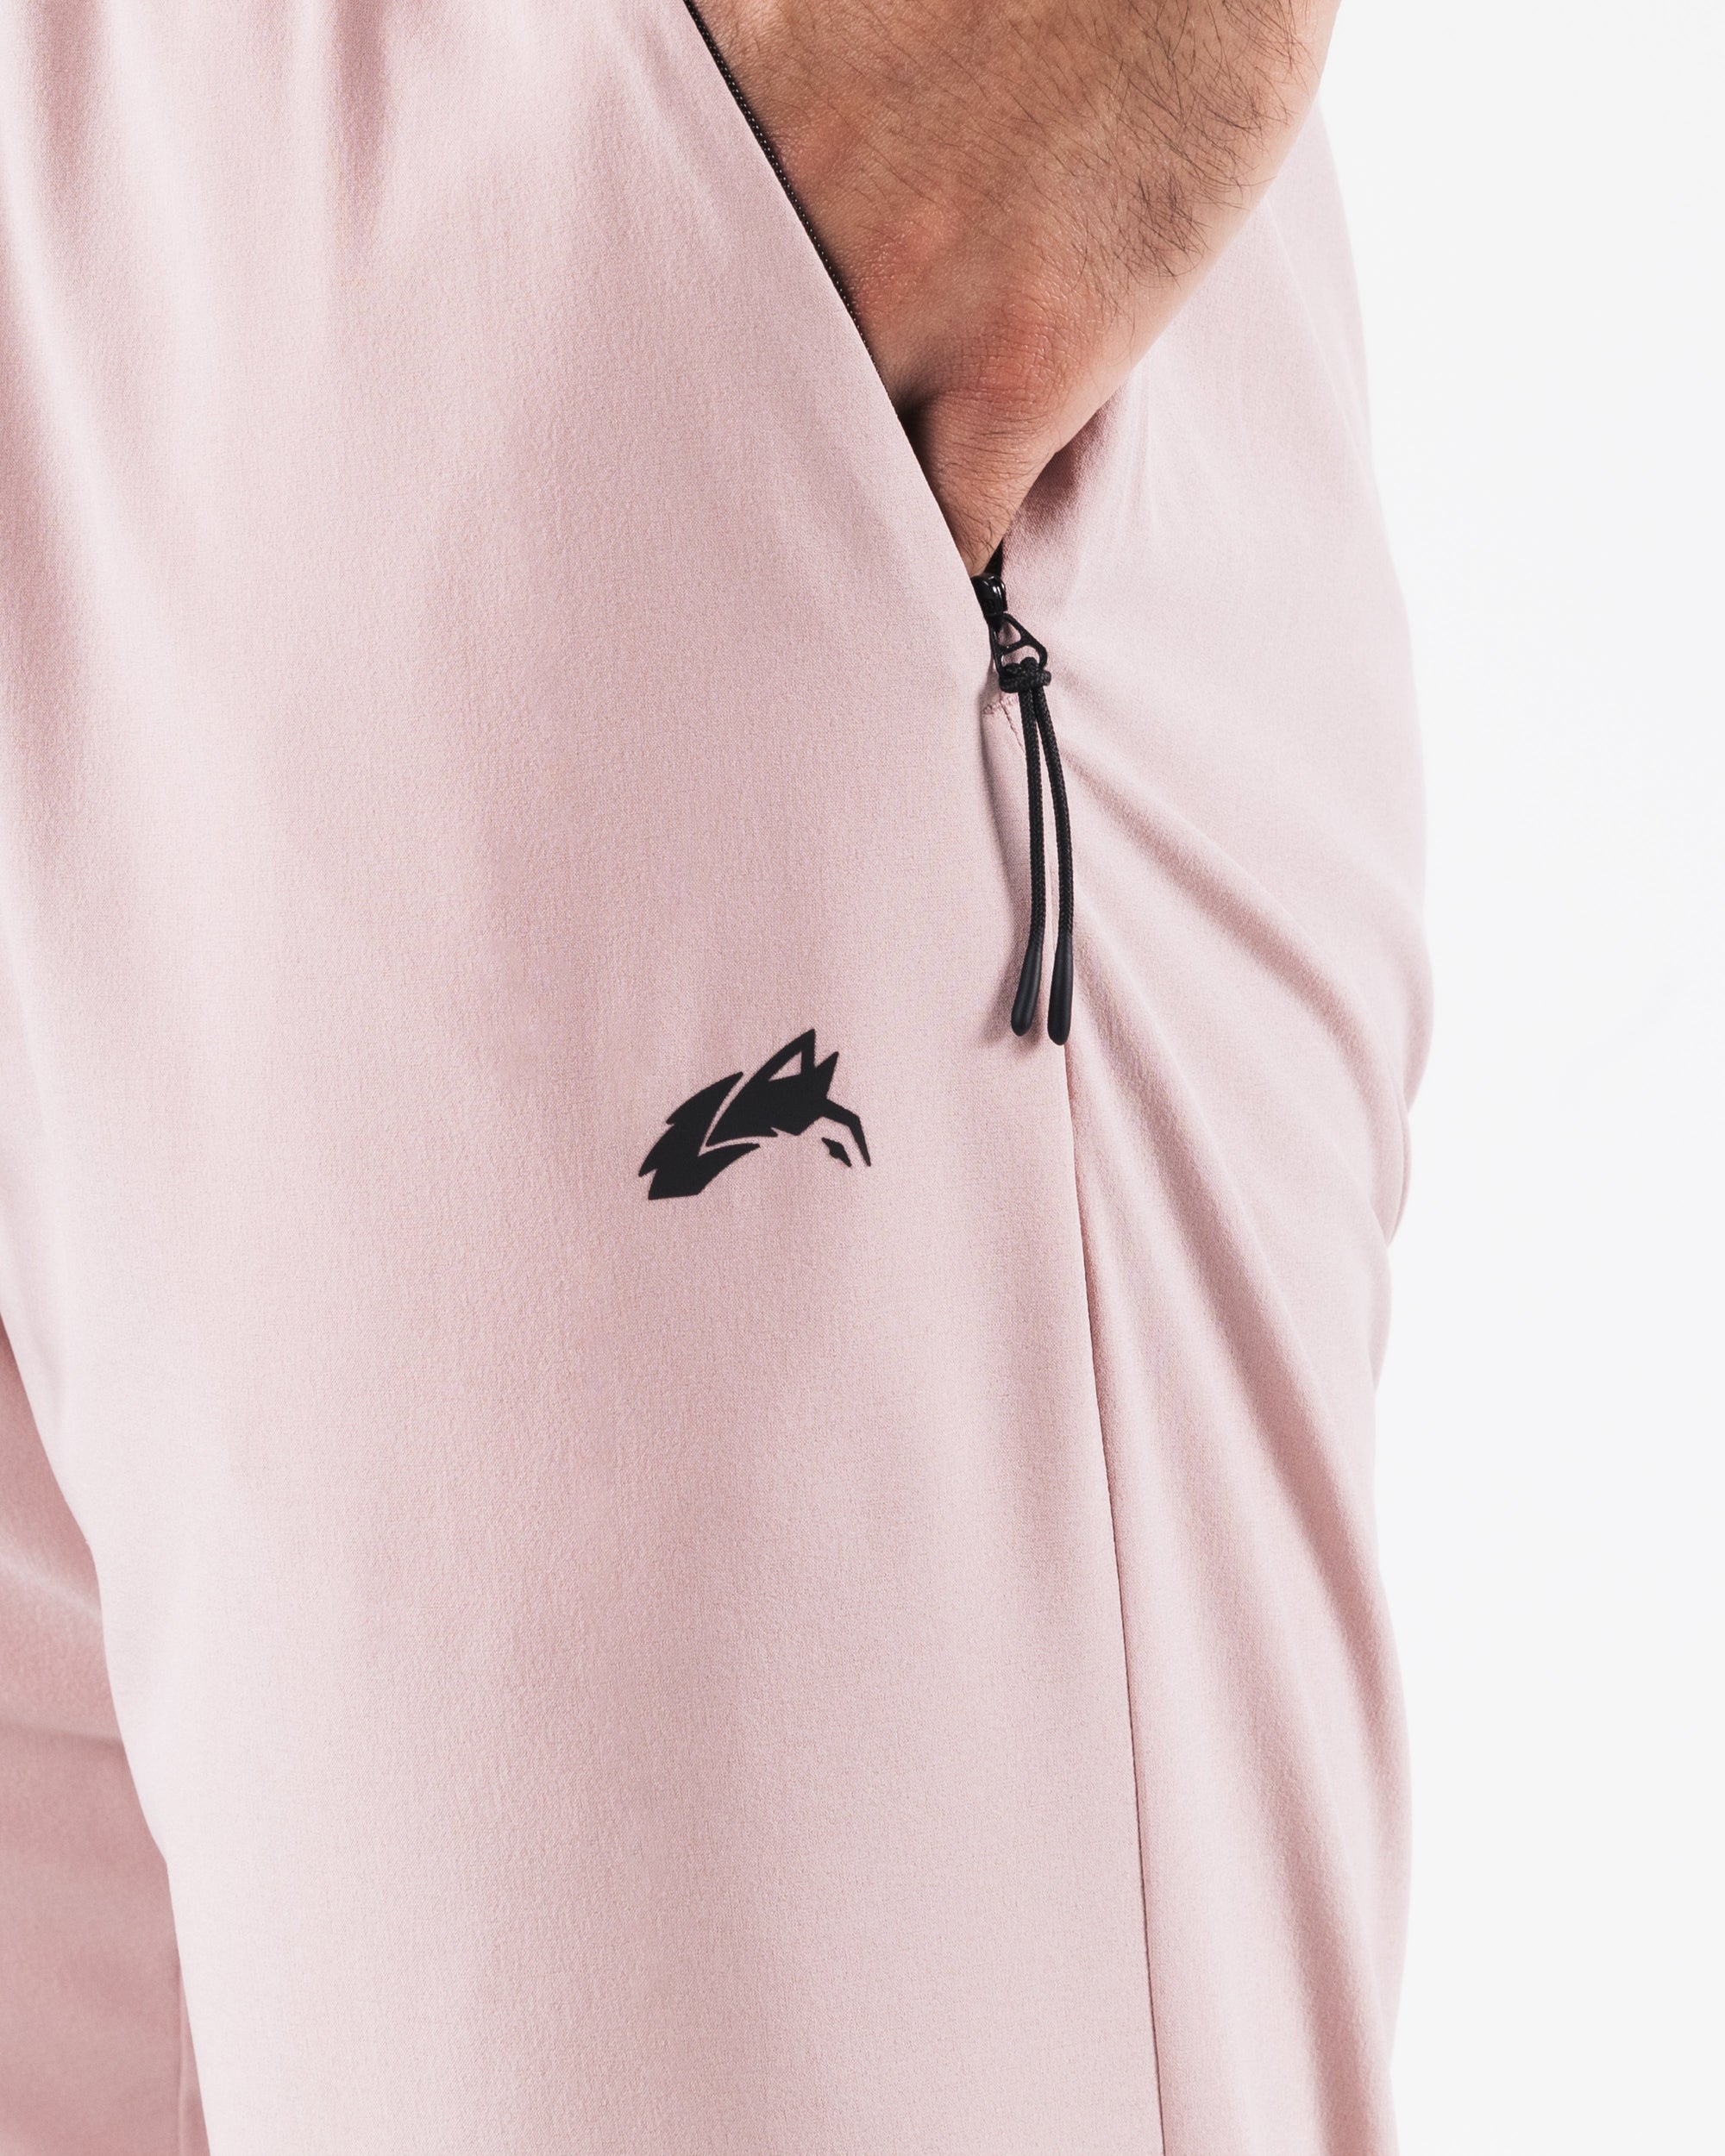 Alphalete Aero Bra Pink Size S, Men's Fashion, Activewear on Carousell